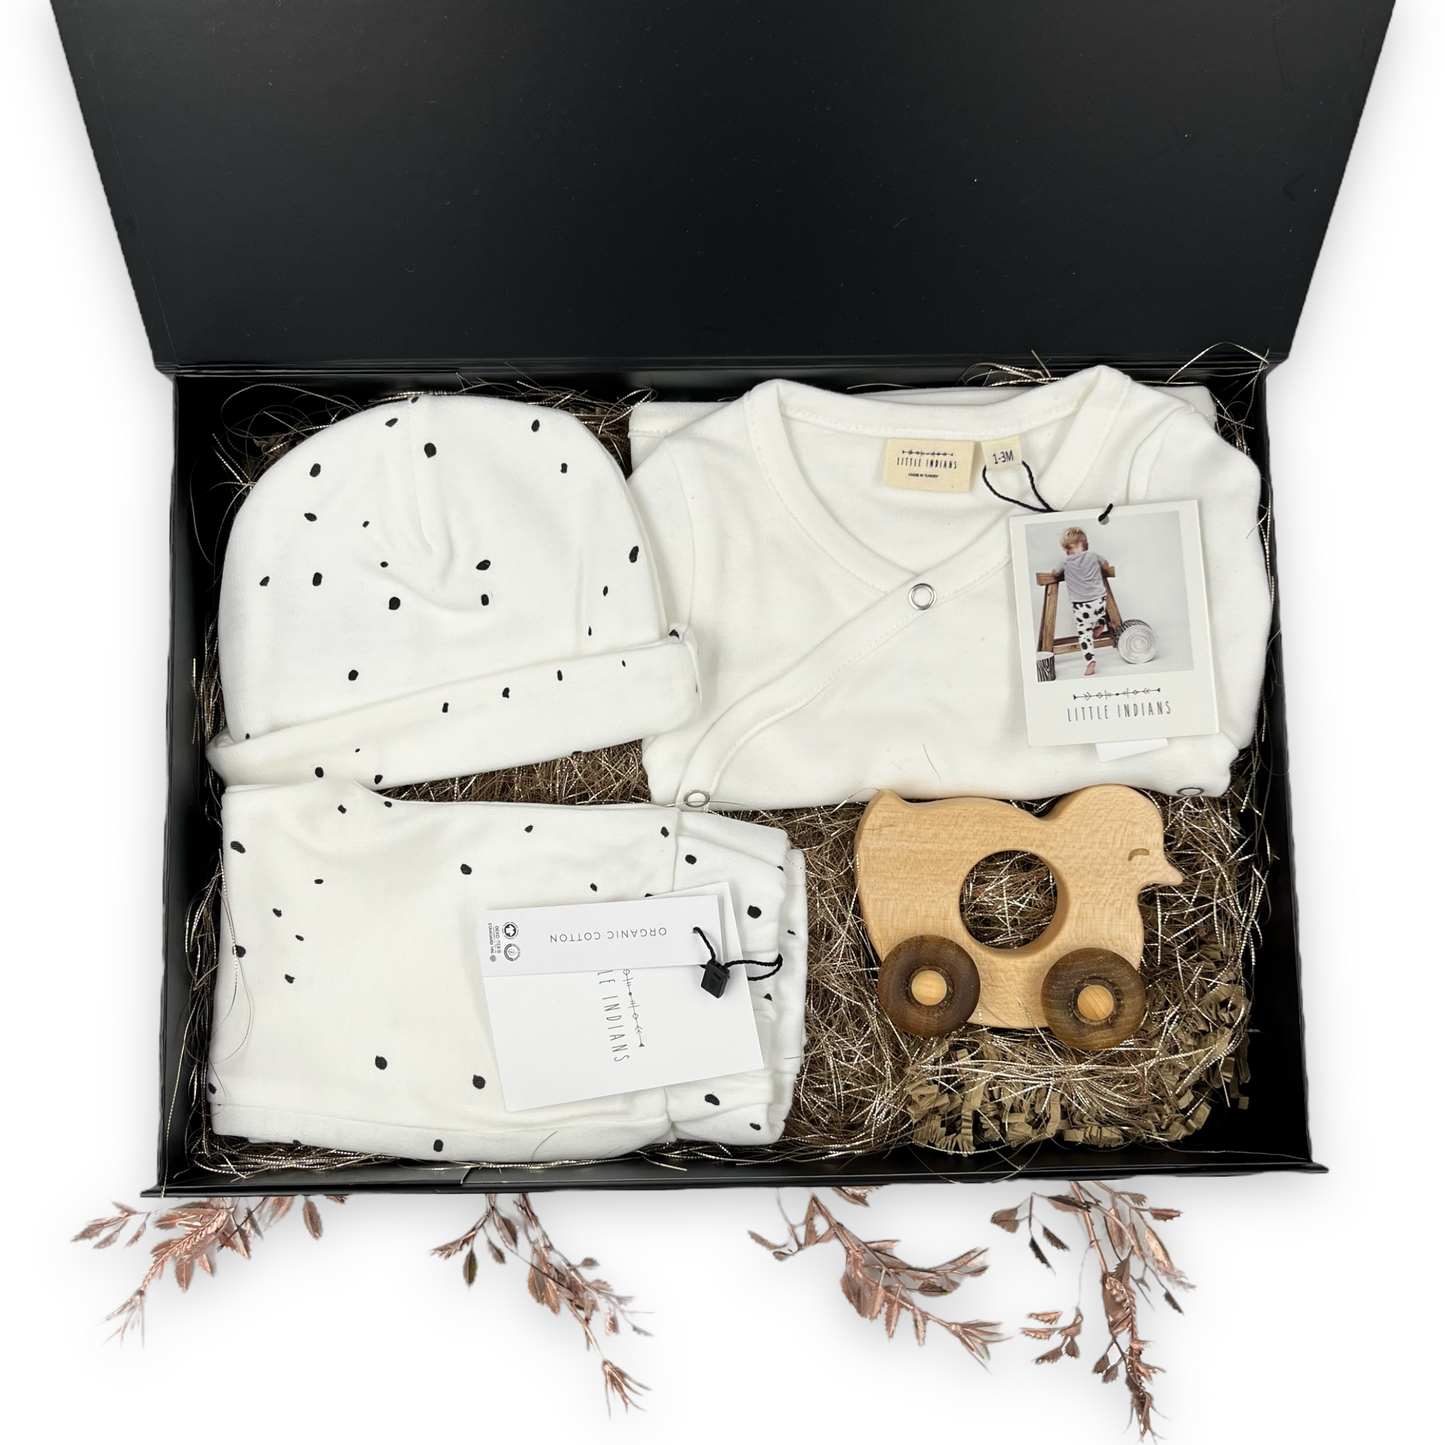 Een luxe cadeau voor de pasgeboren baby om te geven net na de geboorte - met baby kledingset van Little Indians in kleur wit, gemaakt van 100% biologisch katoen.